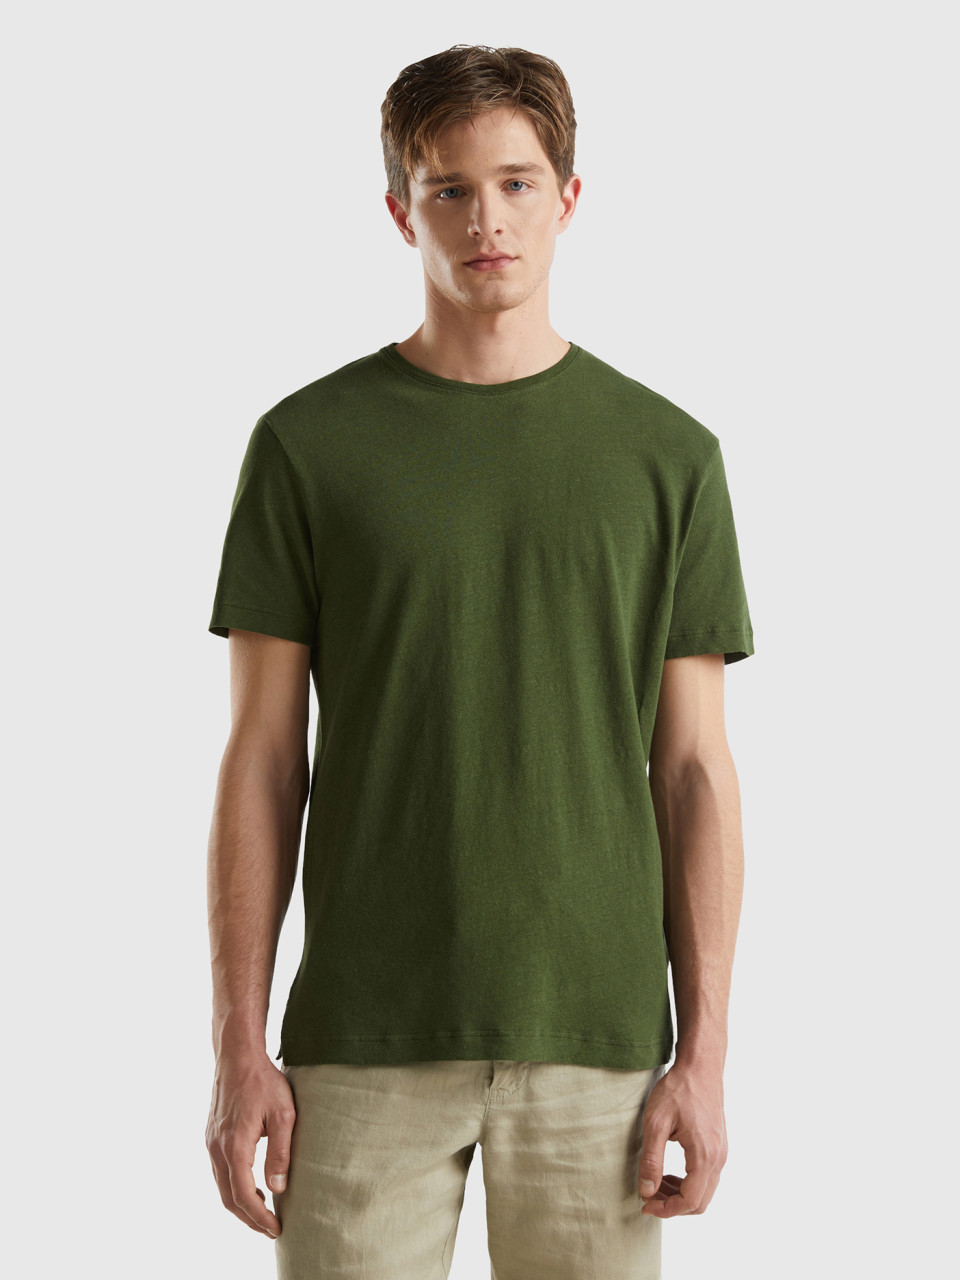 Benetton, Camiseta De Lino Mixto, Militar, Hombre